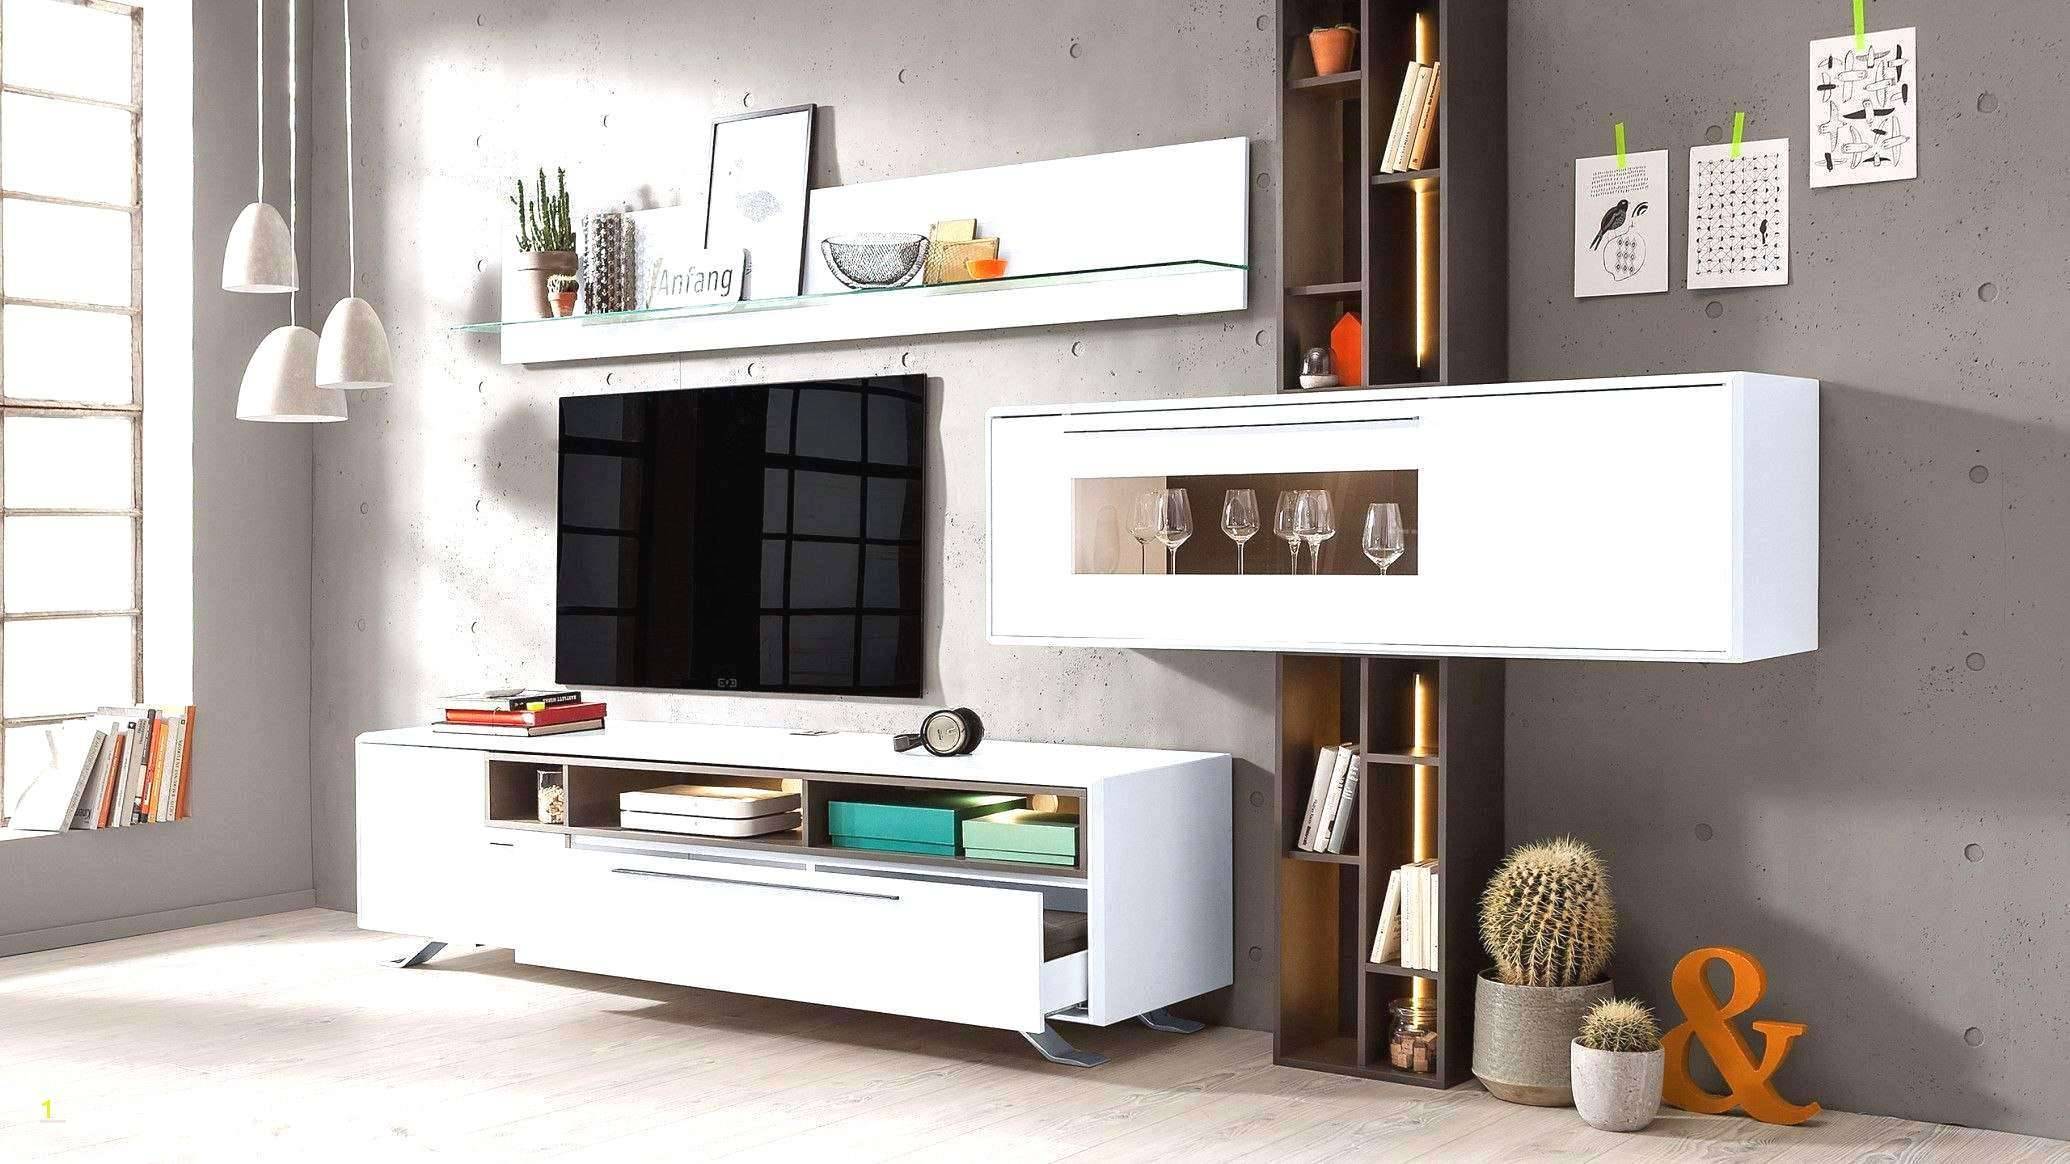 Deko Selber Machen Einzigartig Luxury Deko Ideen Selbermachen Wohnzimmer Concept